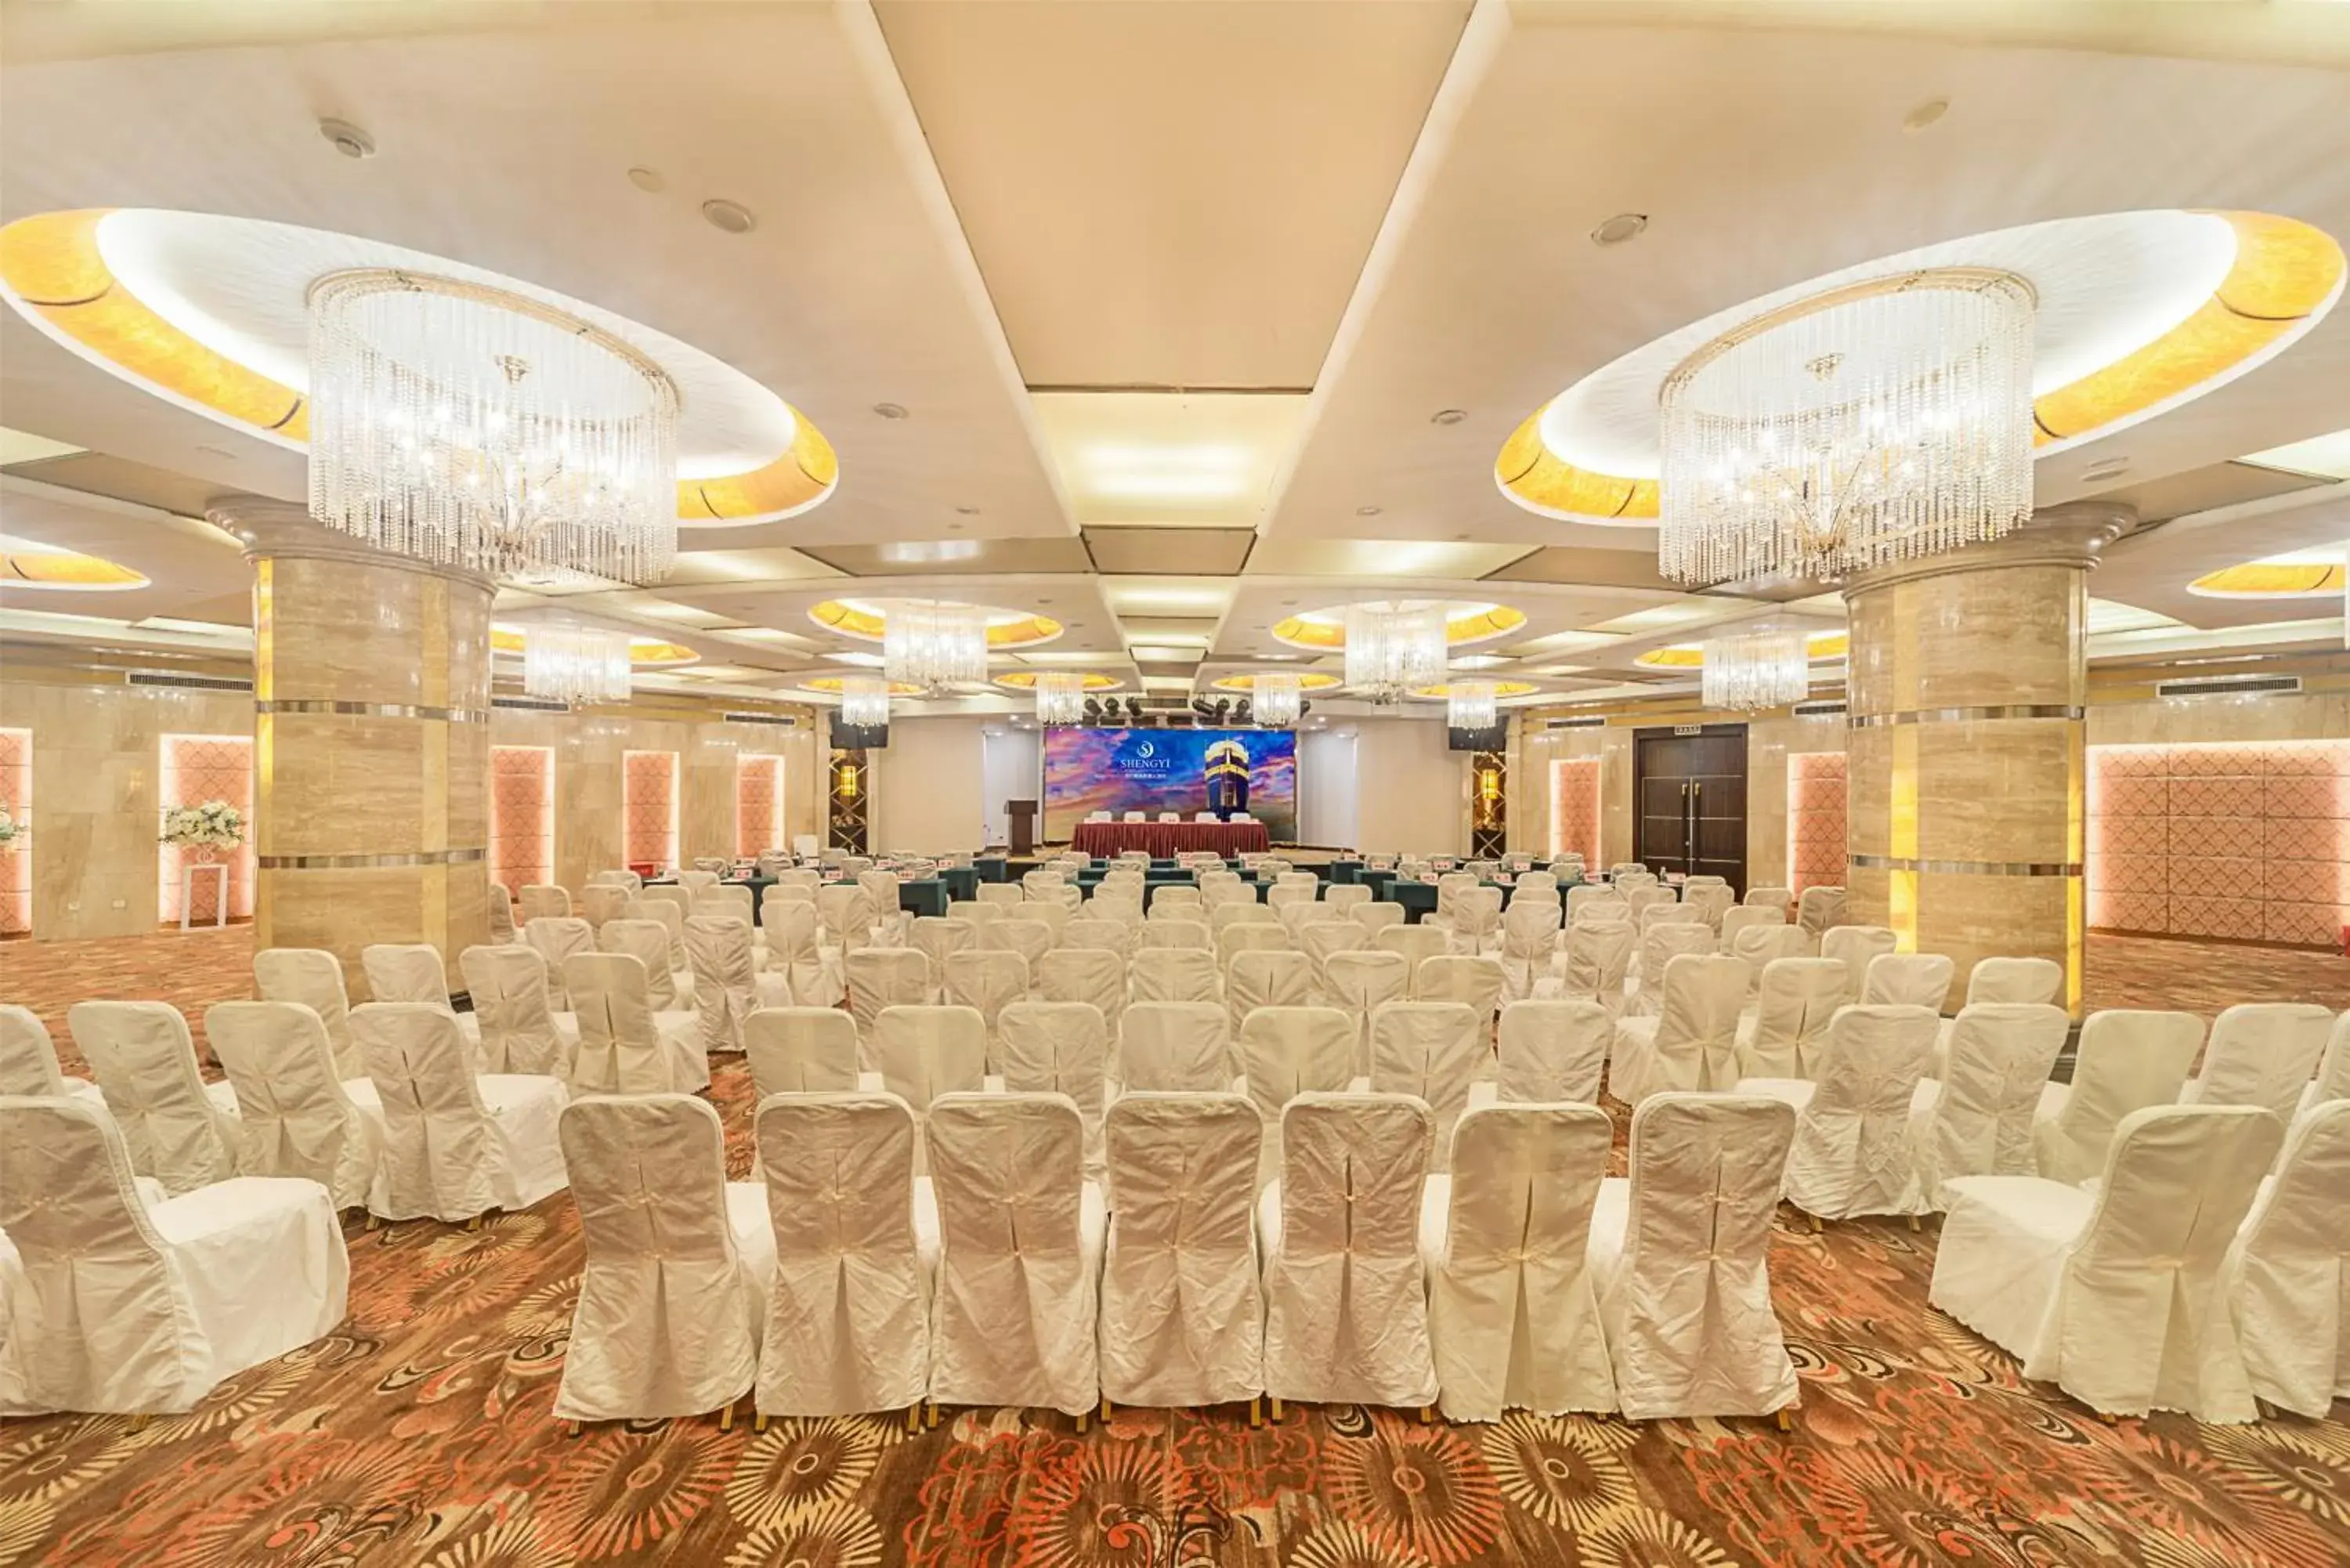 Business facilities, Banquet Facilities in Haikou Mingguang Shengyi Hotel (Previous Mingguang International Hotel)